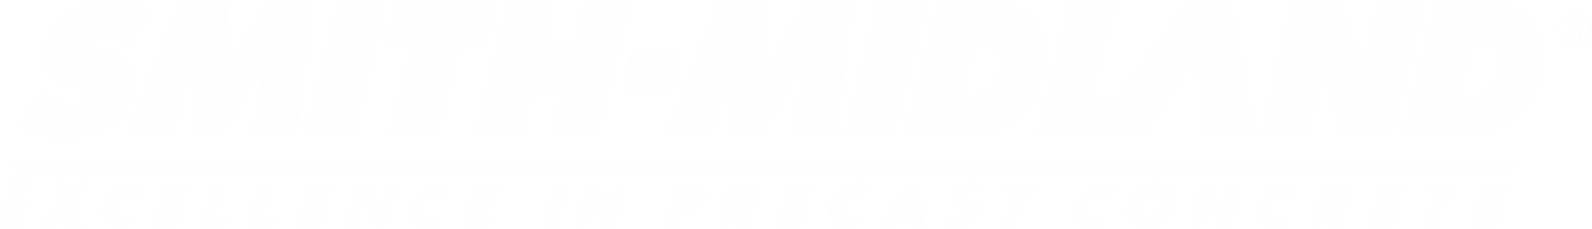 Smith-Midland Logo groß für dunkle Hintergründe (transparentes PNG)